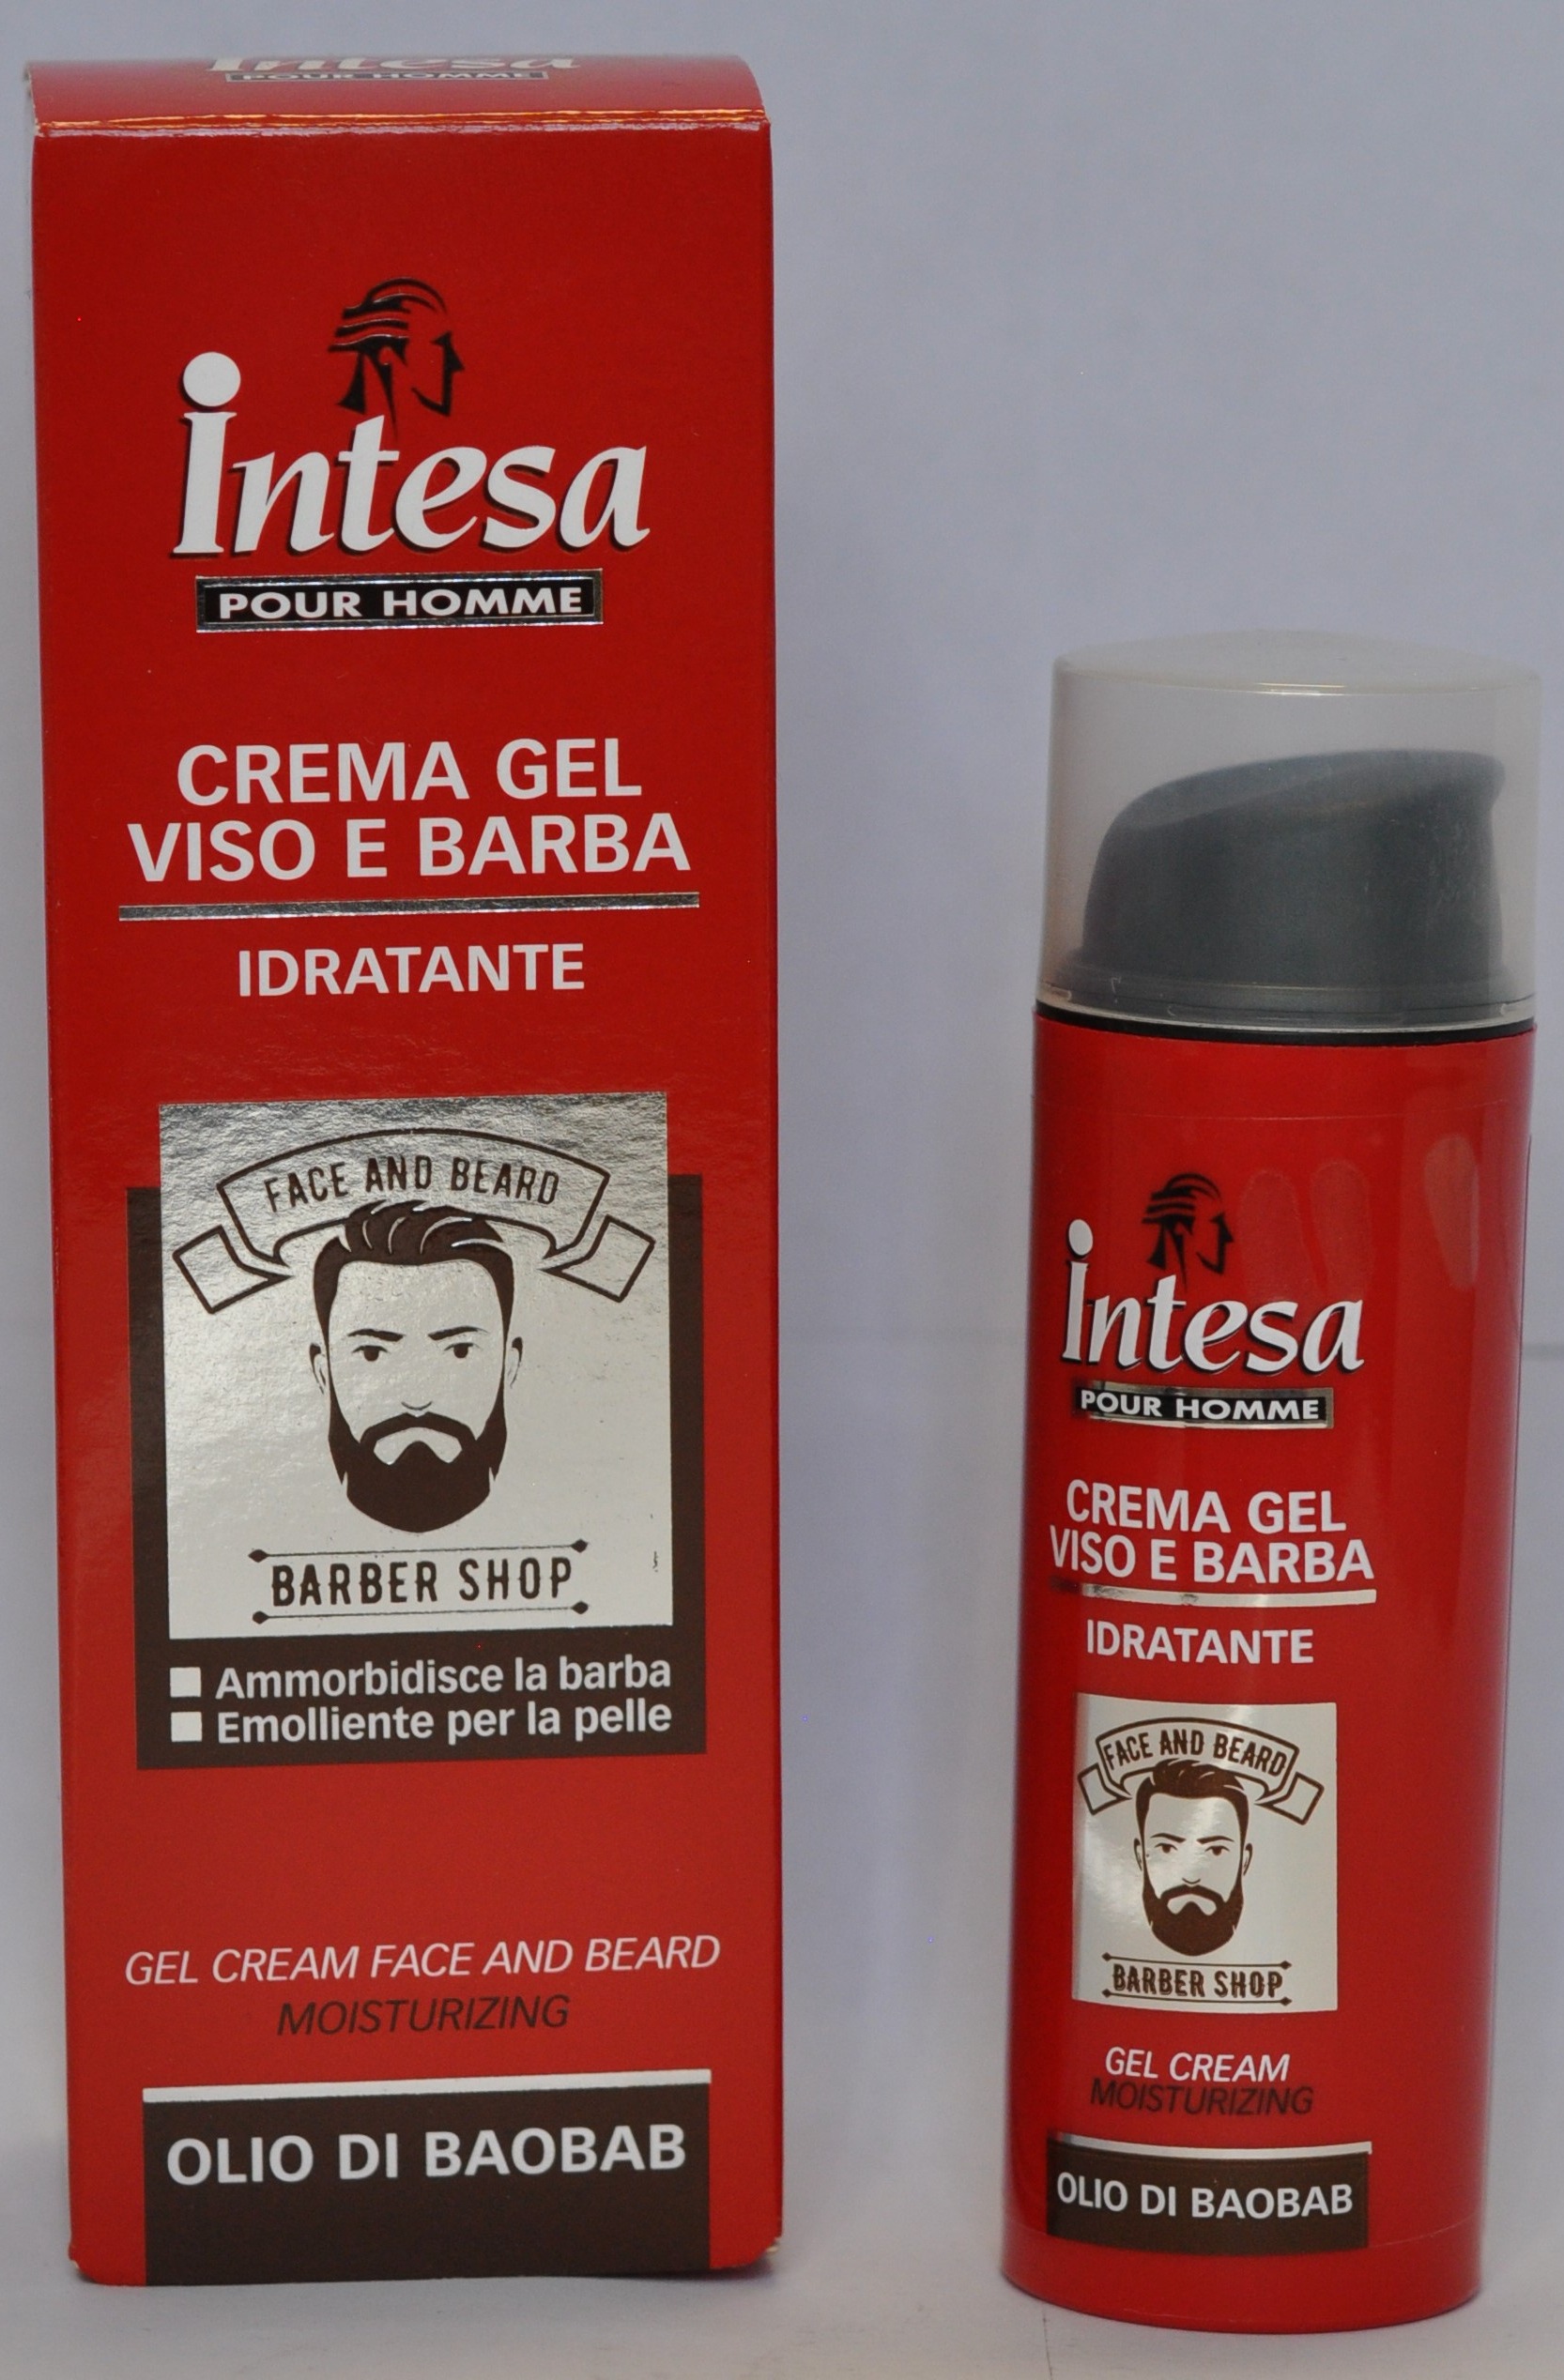 Crema gel viso e barba idratante – hydratačný gél na tvár a fúzy - foto výrobku